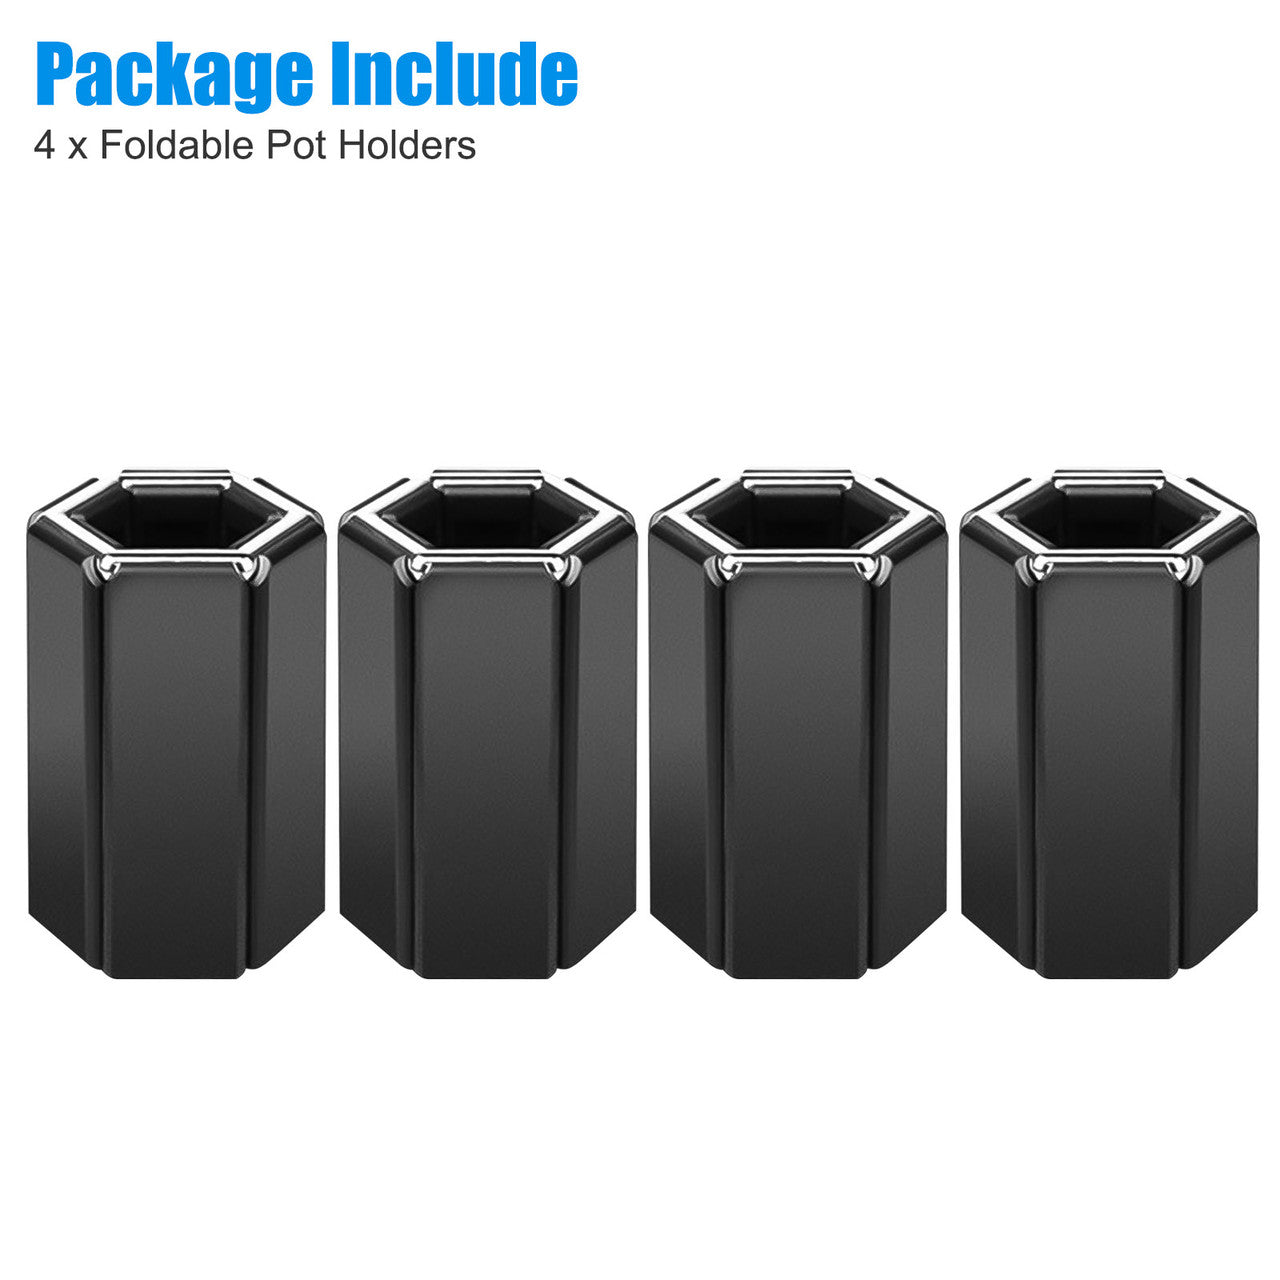 4 Pcs Foldable Pot Mat - Creative Foldable Trivet Mat Plastic Non Slip for Pots Pans Bowl Teapot Kitchen Accessories (Black)